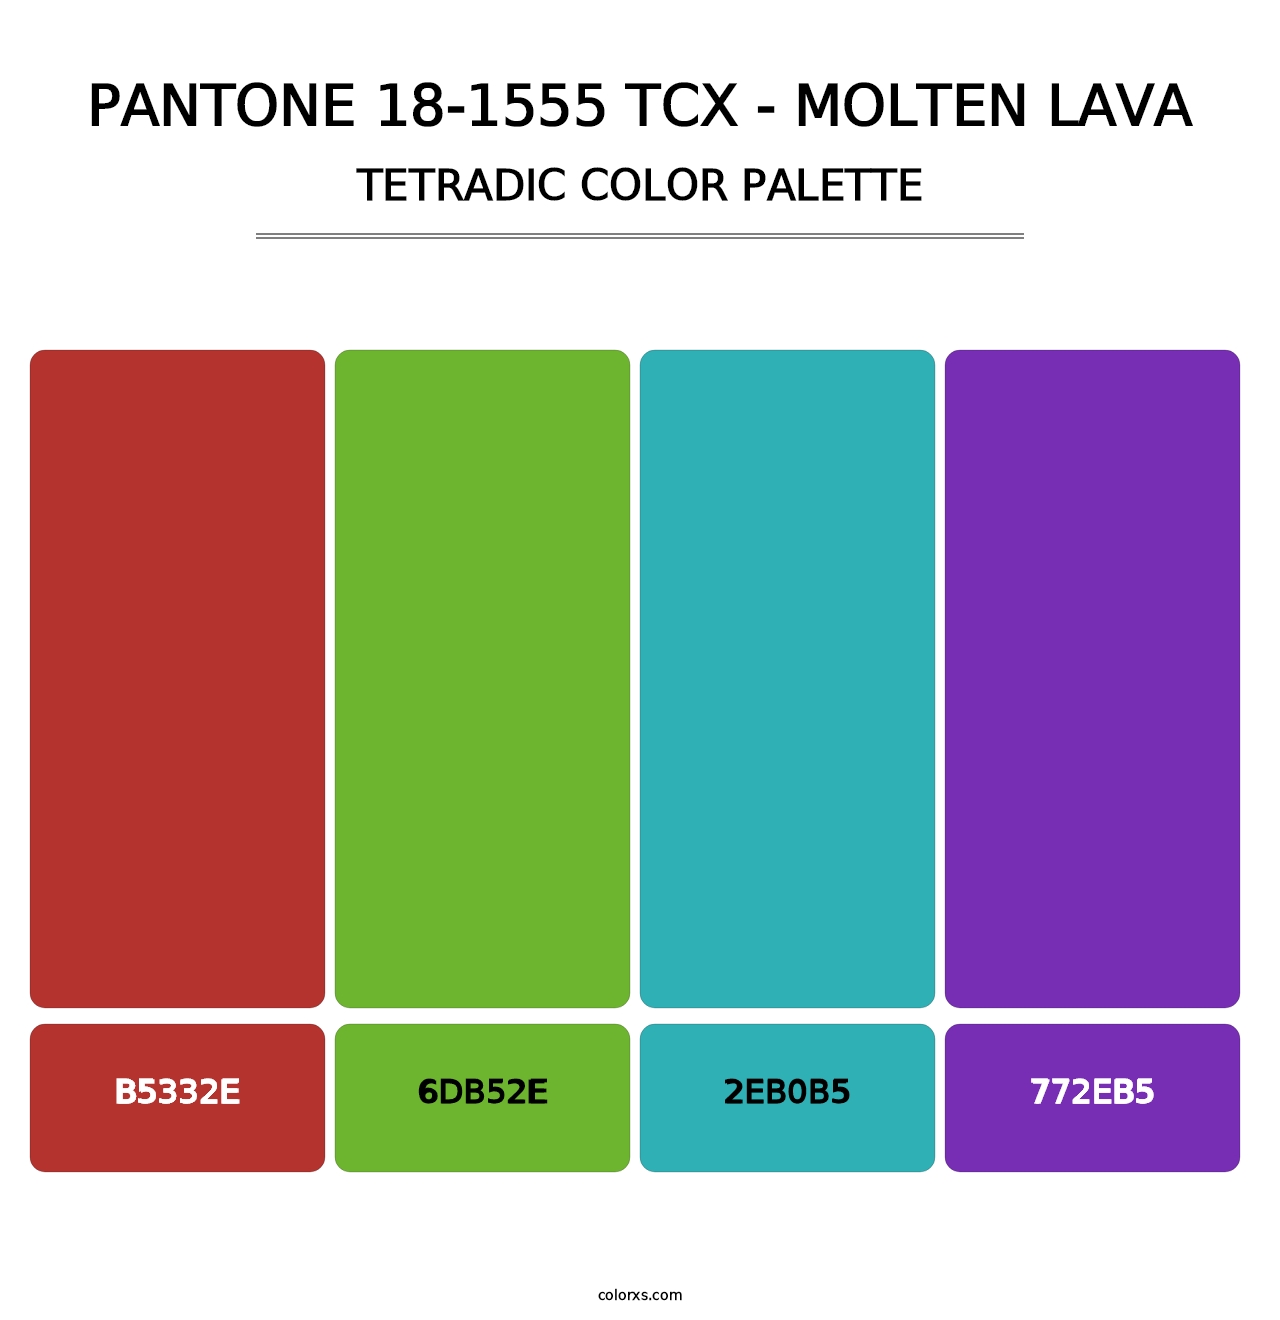 PANTONE 18-1555 TCX - Molten Lava - Tetradic Color Palette